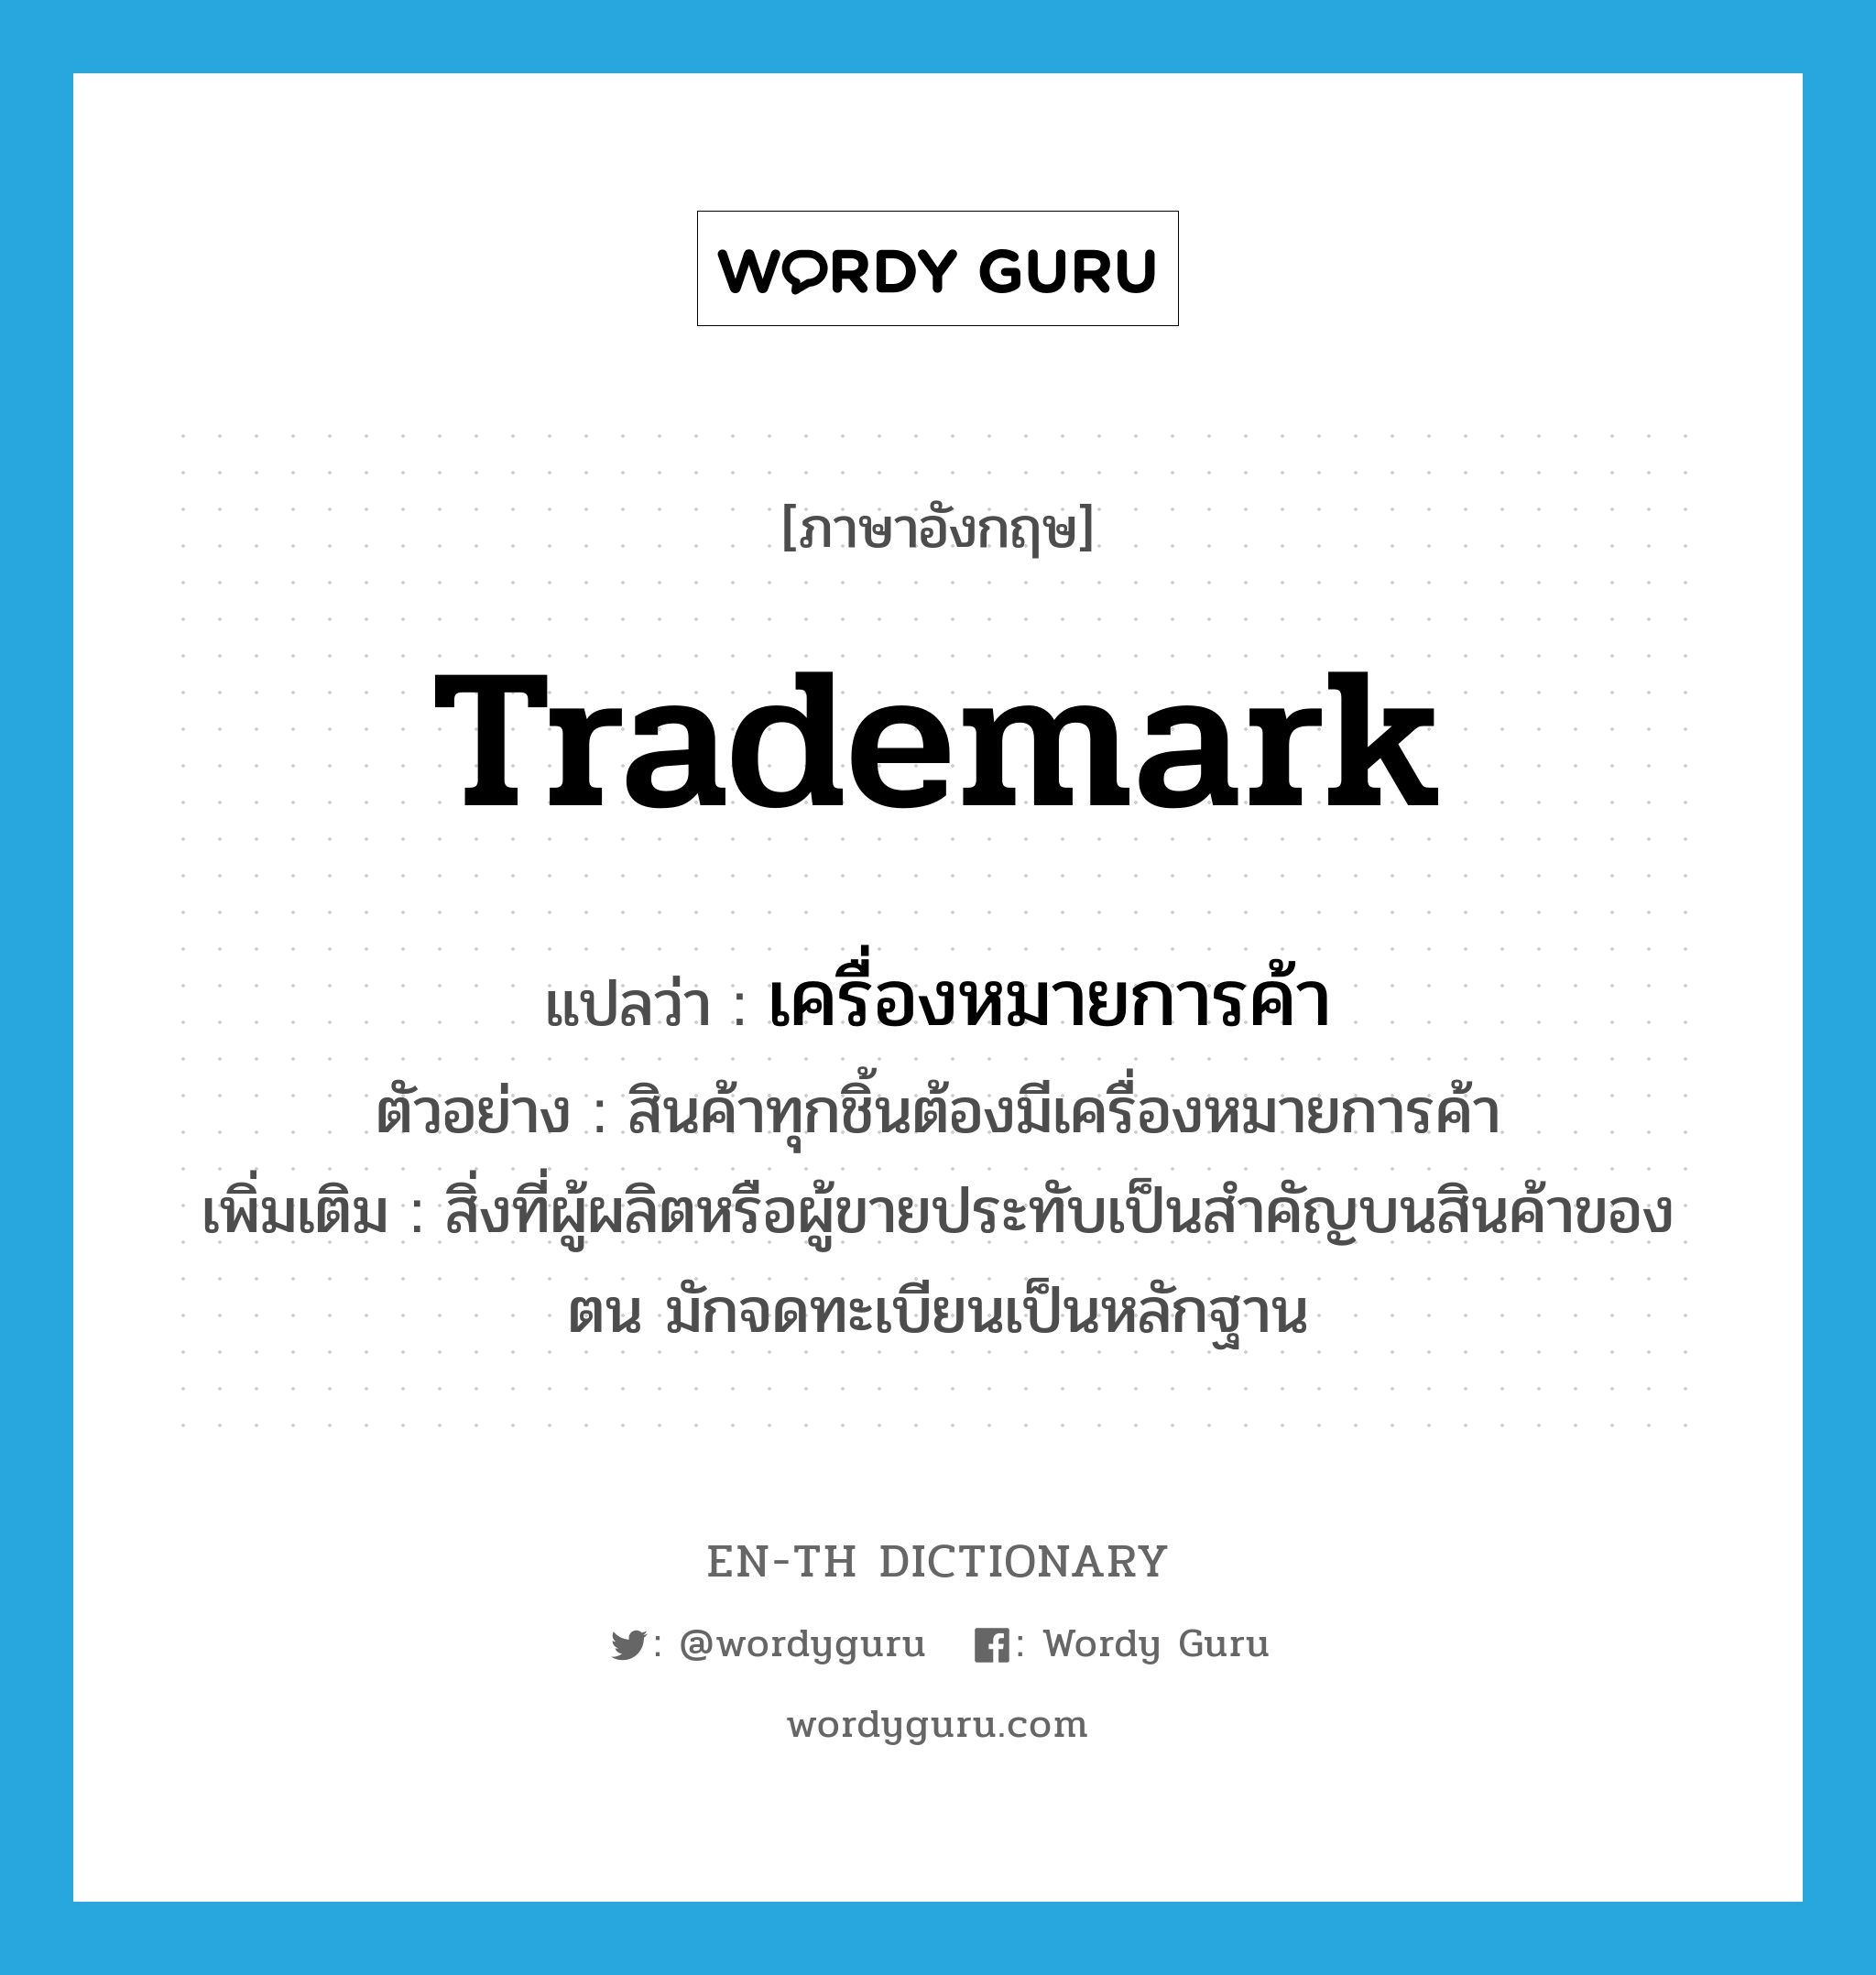 trademark แปลว่า?, คำศัพท์ภาษาอังกฤษ trademark แปลว่า เครื่องหมายการค้า ประเภท N ตัวอย่าง สินค้าทุกชิ้นต้องมีเครื่องหมายการค้า เพิ่มเติม สิ่งที่ผู้ผลิตหรือผู้ขายประทับเป็นสำคัญบนสินค้าของตน มักจดทะเบียนเป็นหลักฐาน หมวด N